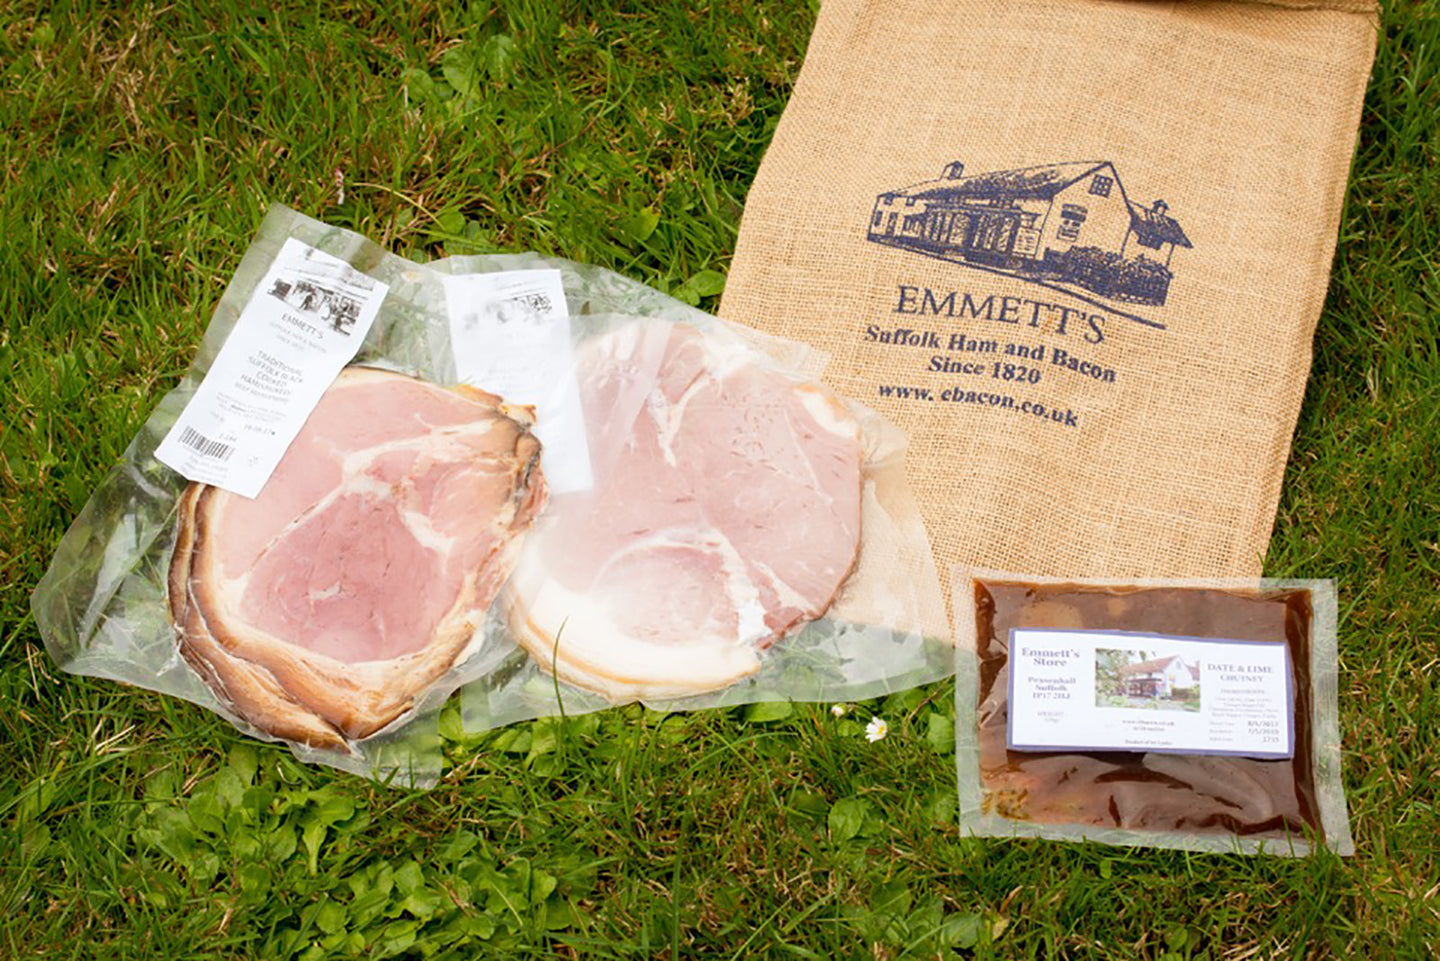 Emmett's Ham and Chutney Bag - Emmett's